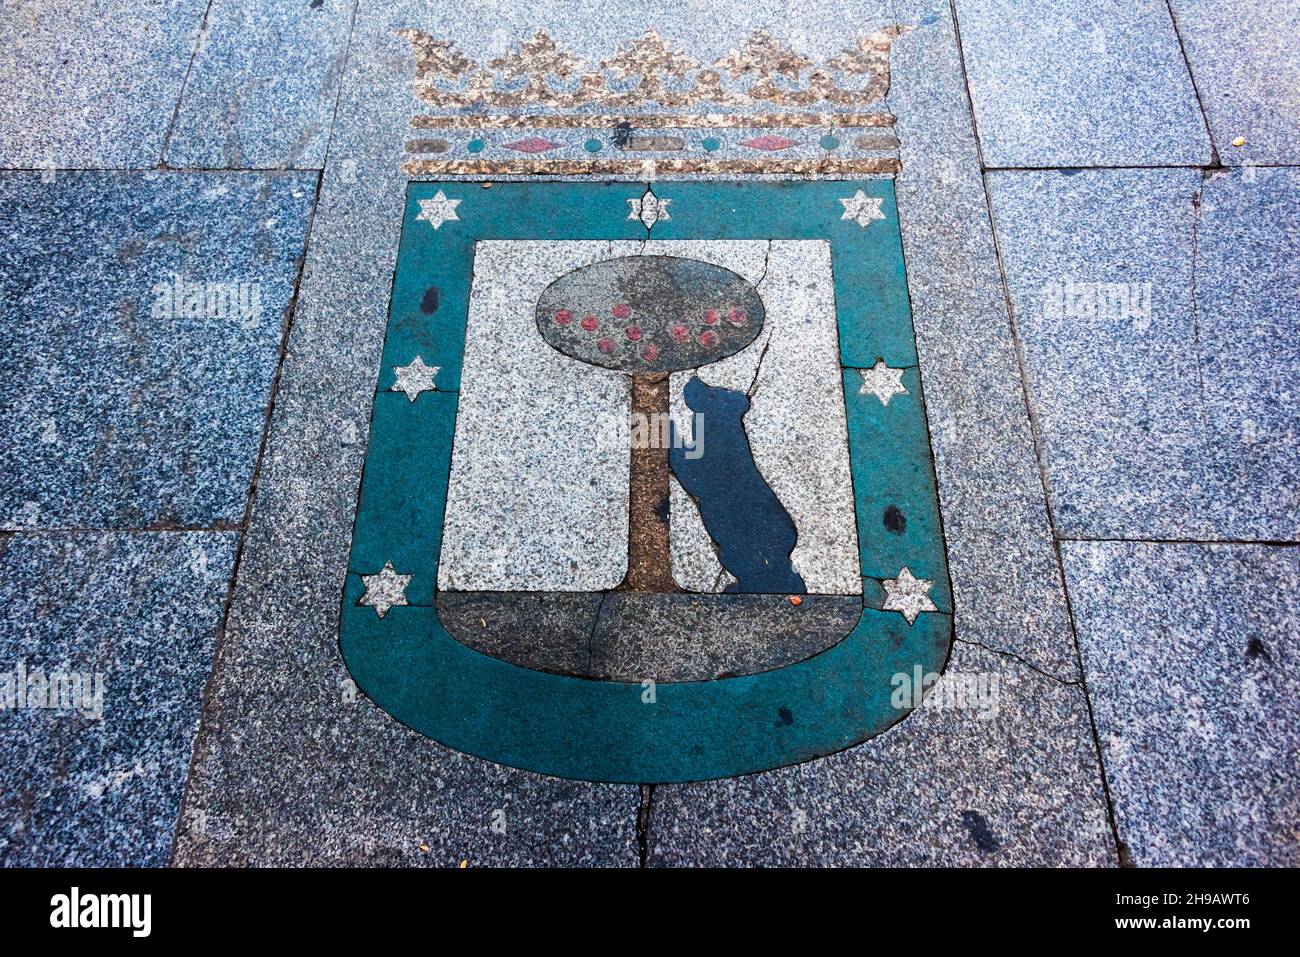 Dessin de l'ours et de l'arbre de la fraise (représentant les armoiries de Madrid) sur le terrain à Puerta del sol, Madrid, Espagne Banque D'Images